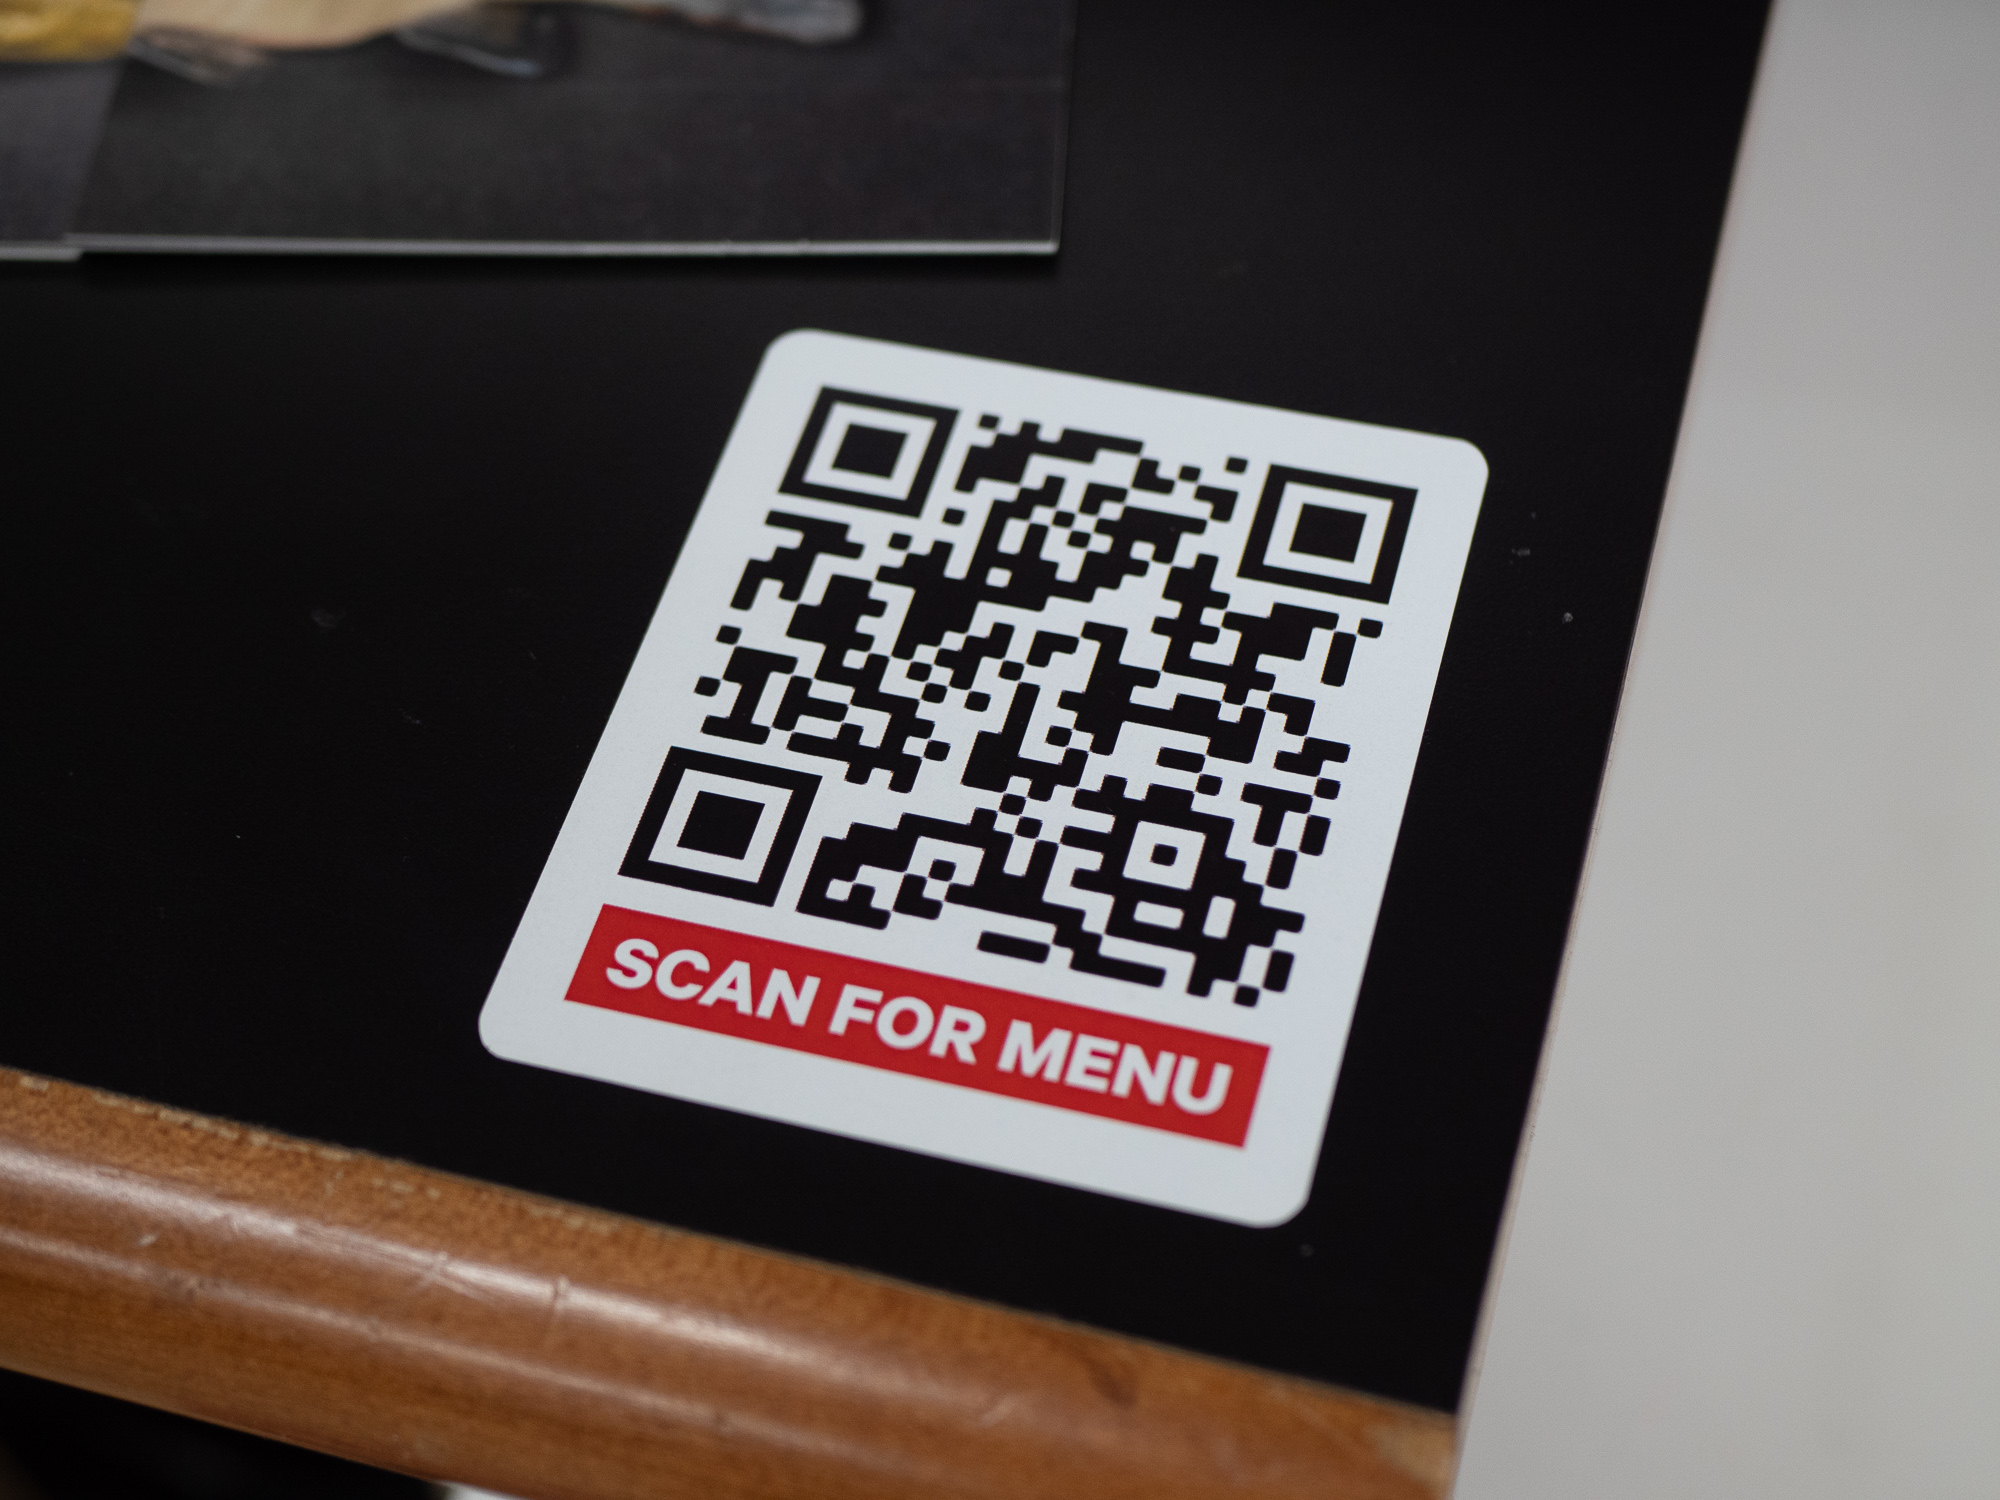 Qr код крышка. Наклейка с QR кодом. Наклейки для QR кодов. QR коды в ресторанах. Наклейка с ЙК кодом на стол.